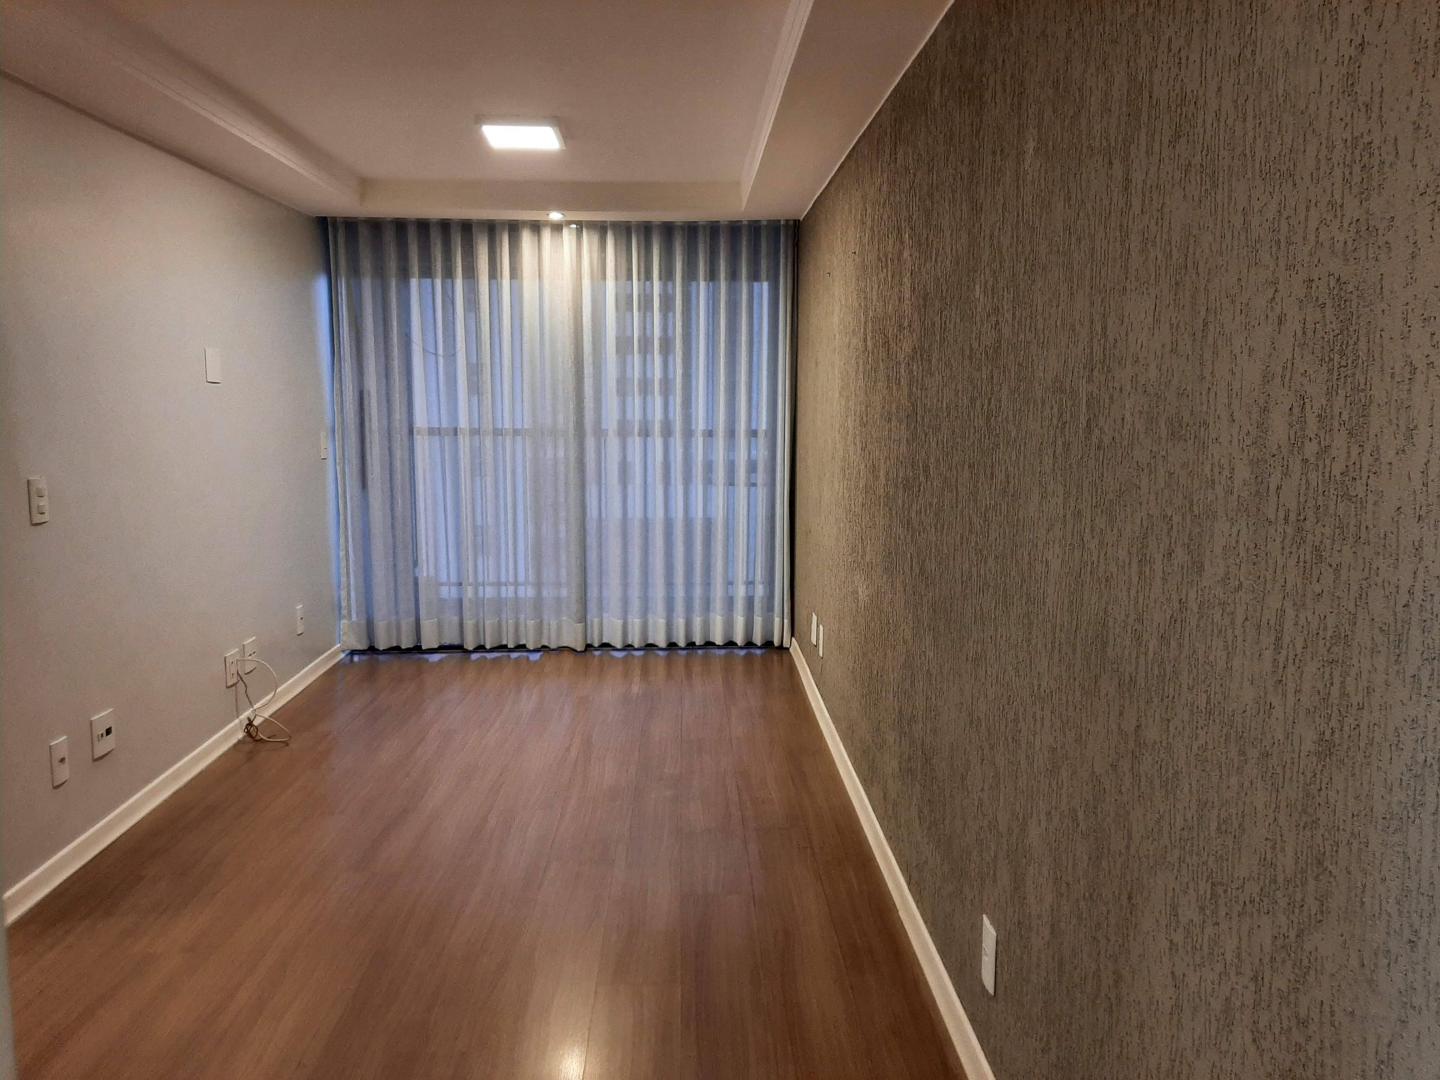 Apartamento, 02 Quartos + 01 Reversível, Taguatinga, Brasília/DF.